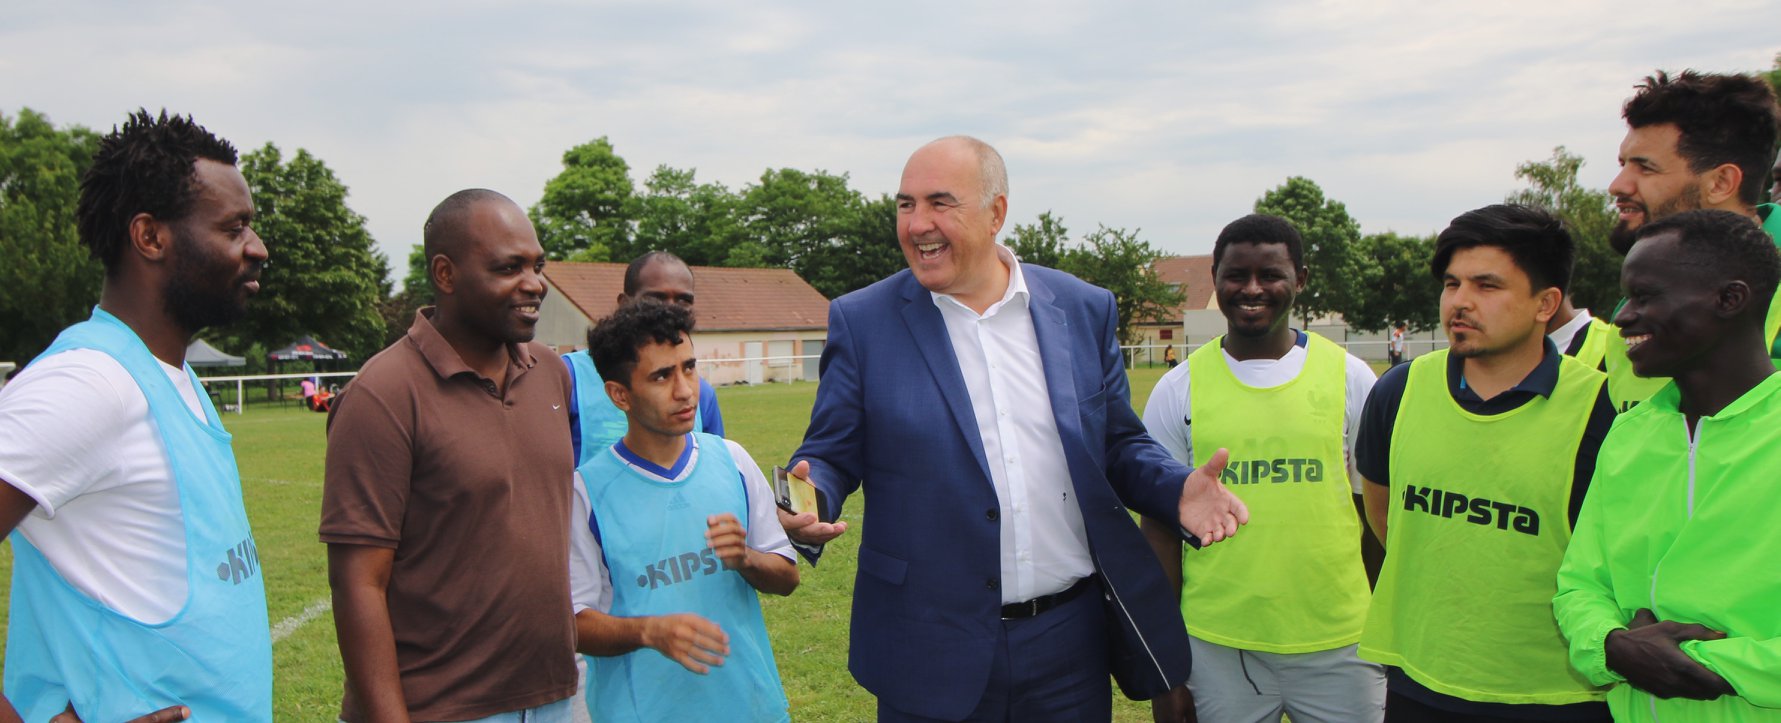 Tournois de foot réfugiés soissons Coallia avec le maire